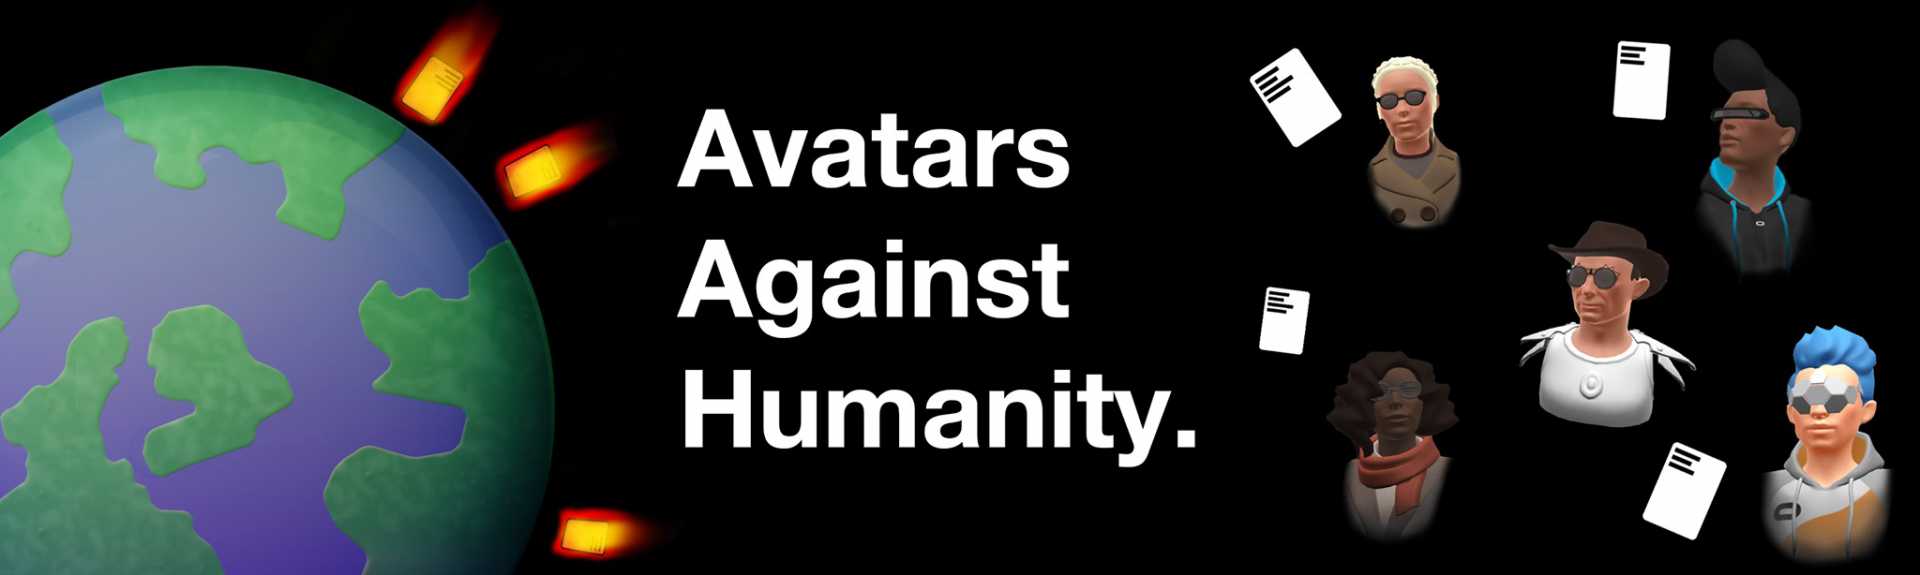 Avatars Against Humanity